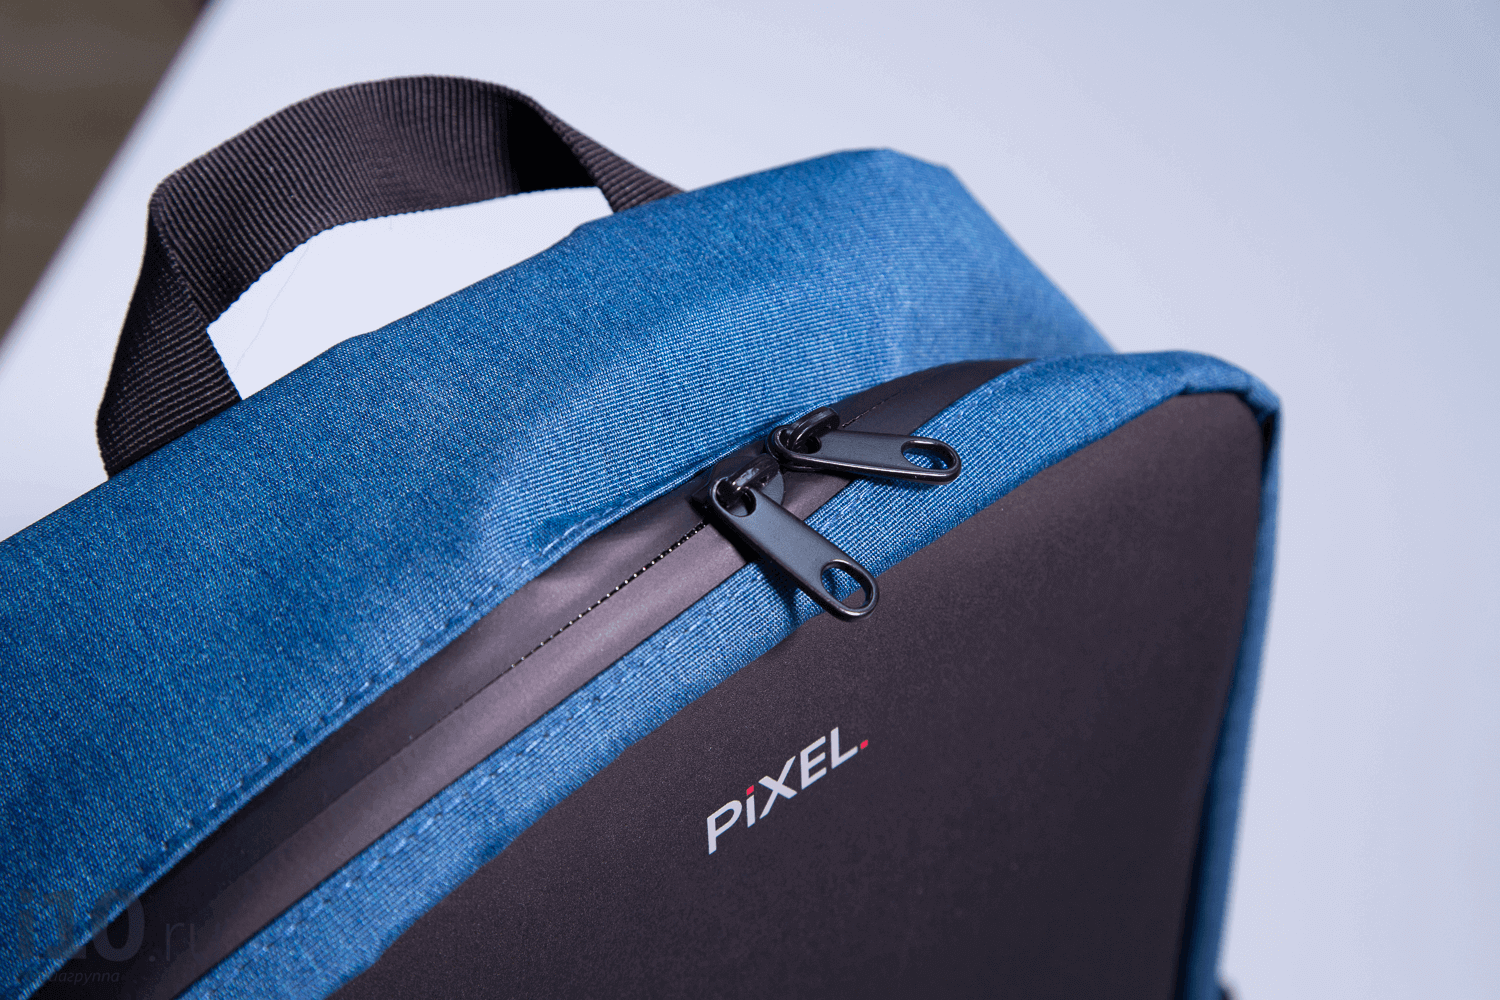 Обзор PIXEL — первых в мире рюкзаков с экраном PIXEL, рюкзак, можно, имеет, рюкзака, экран, рюкзаки, Pacsafe, карман, который, текст, модели, чтобы, разместить, спинке, дисплей, литров, ценные, ноутбука, планшета